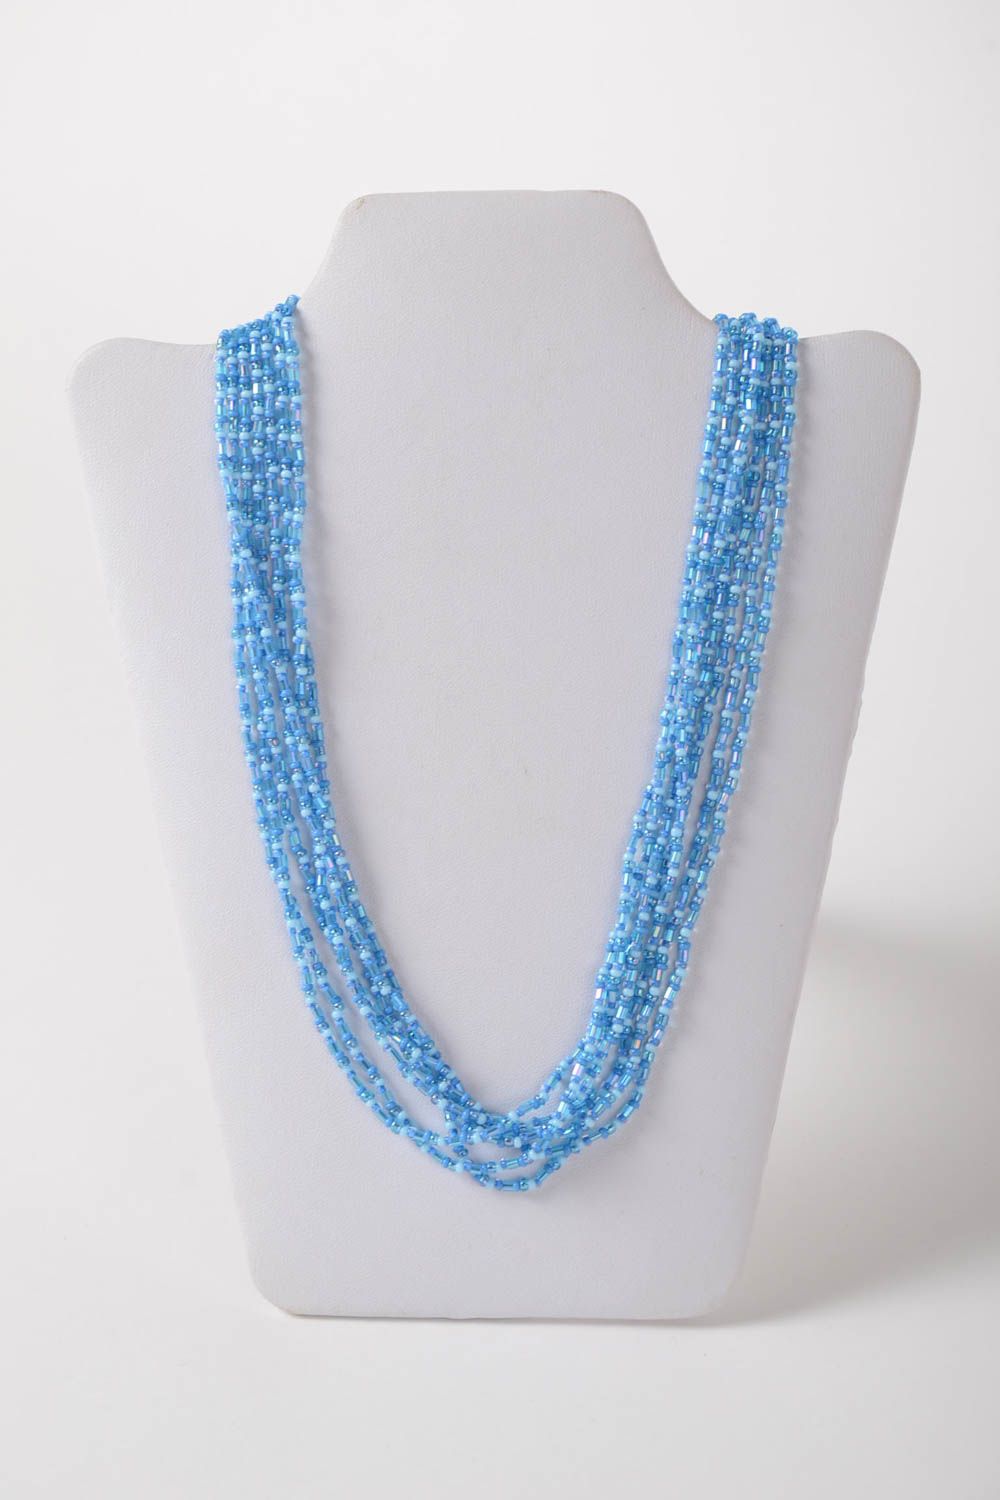 Ожерелье из бисера и стекляруса ручной работы многорядное красивое голубое фото 2